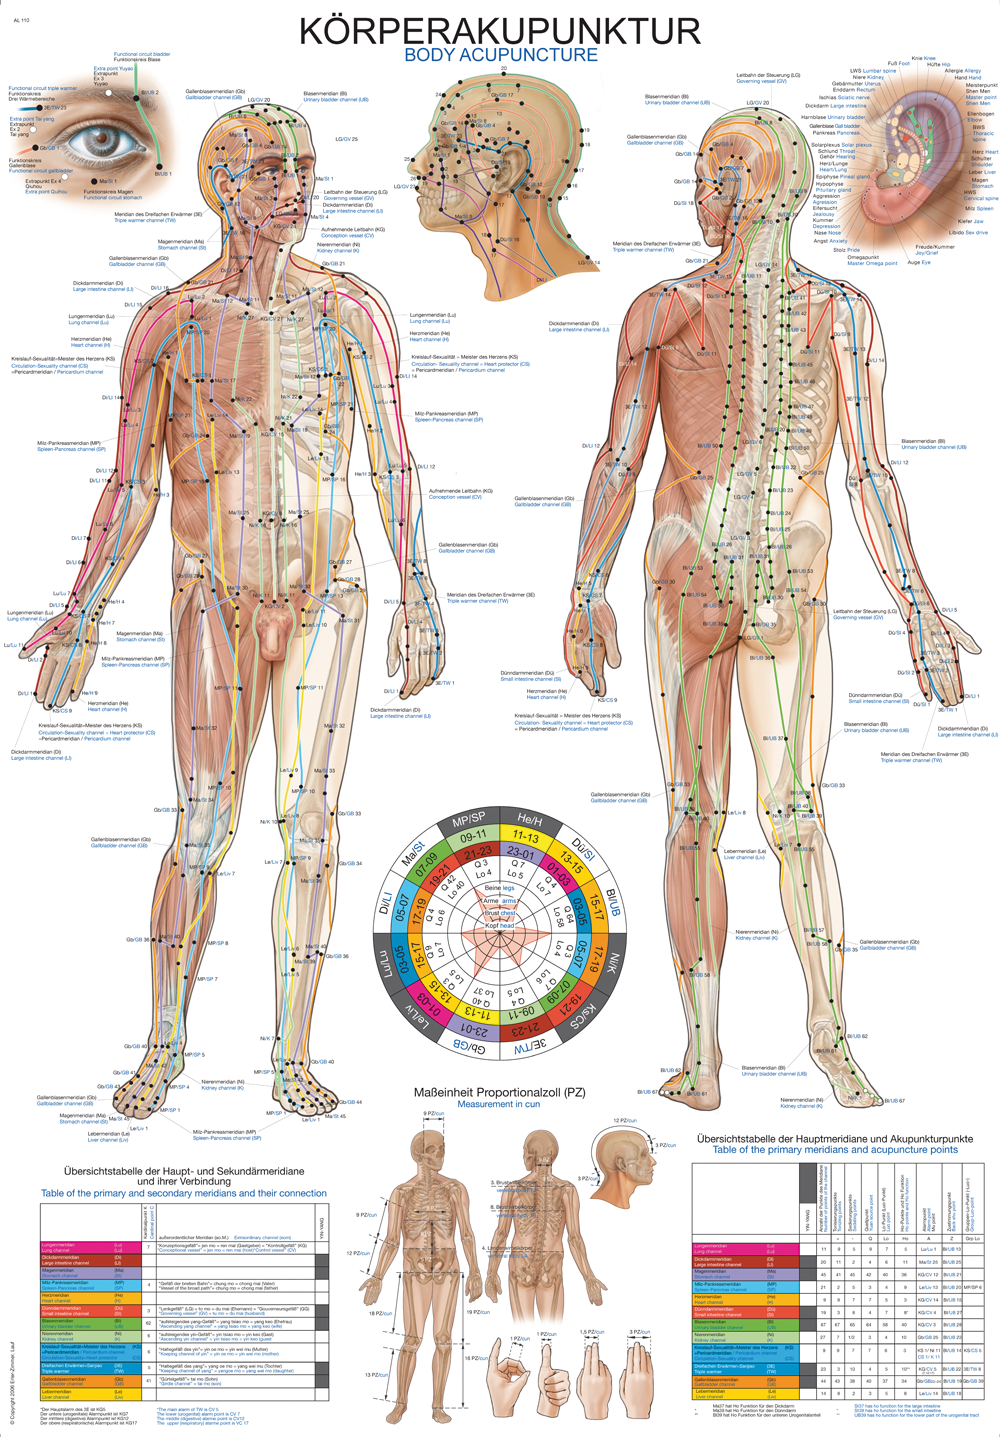 AL110:Lehrtafel "Körper-Akupunktur"